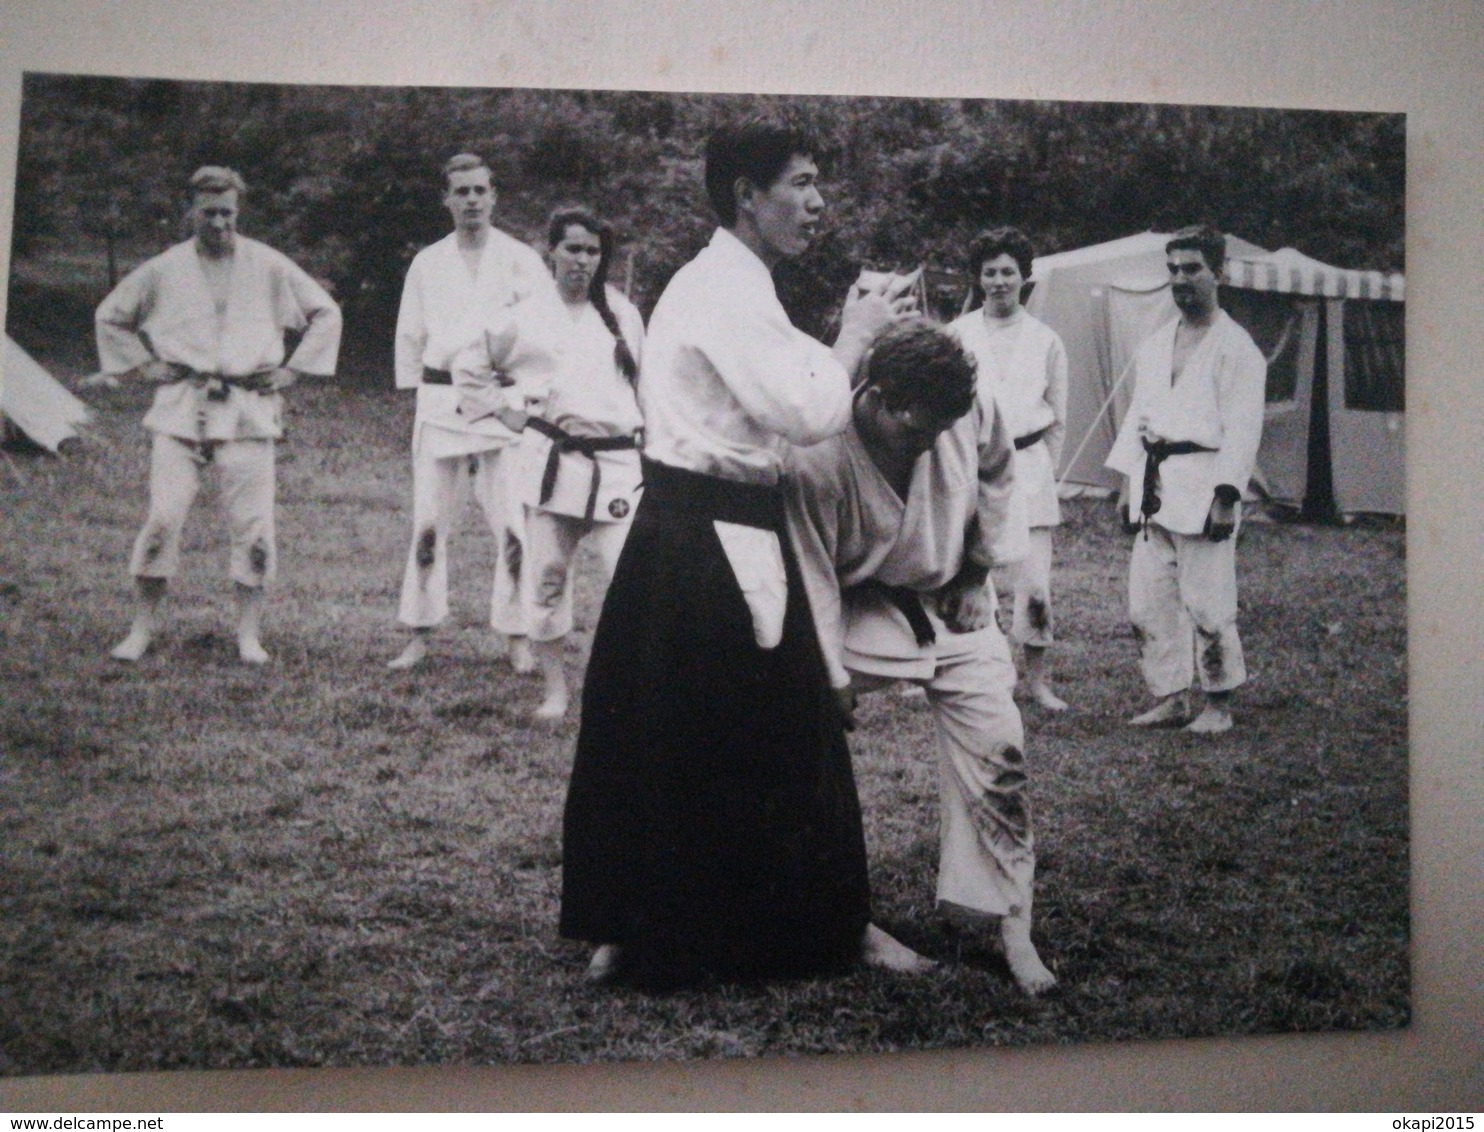 GROUPE DE PERSONNES DU CERCLE JULIEN NAESSENS BUDO arts martiaux CAMP ACHOUFFE BELGIQUE 80 PHOTOS ORIGINALES ANNÉE 1962